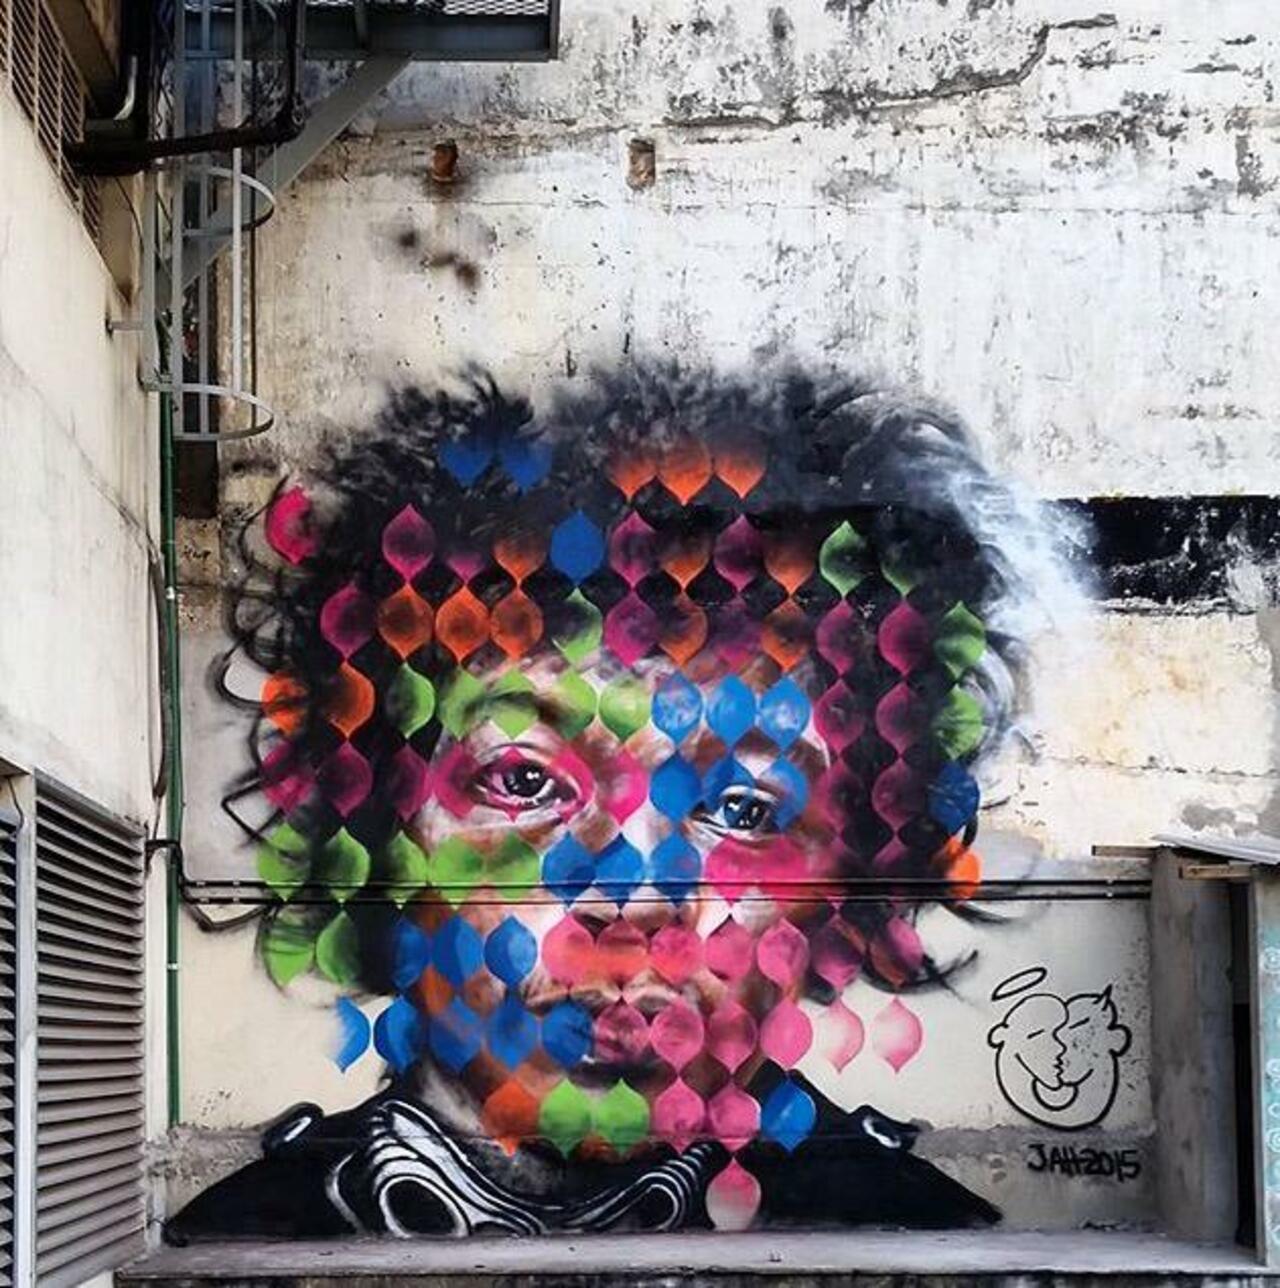 RT @GoogleStreetArt: New Street Art of Jimi Hendrix by the artist Jahru in São Paulo, Brazil. 

#art #arte #graffiti #streetart http://t.co/ULlQmA8MlR